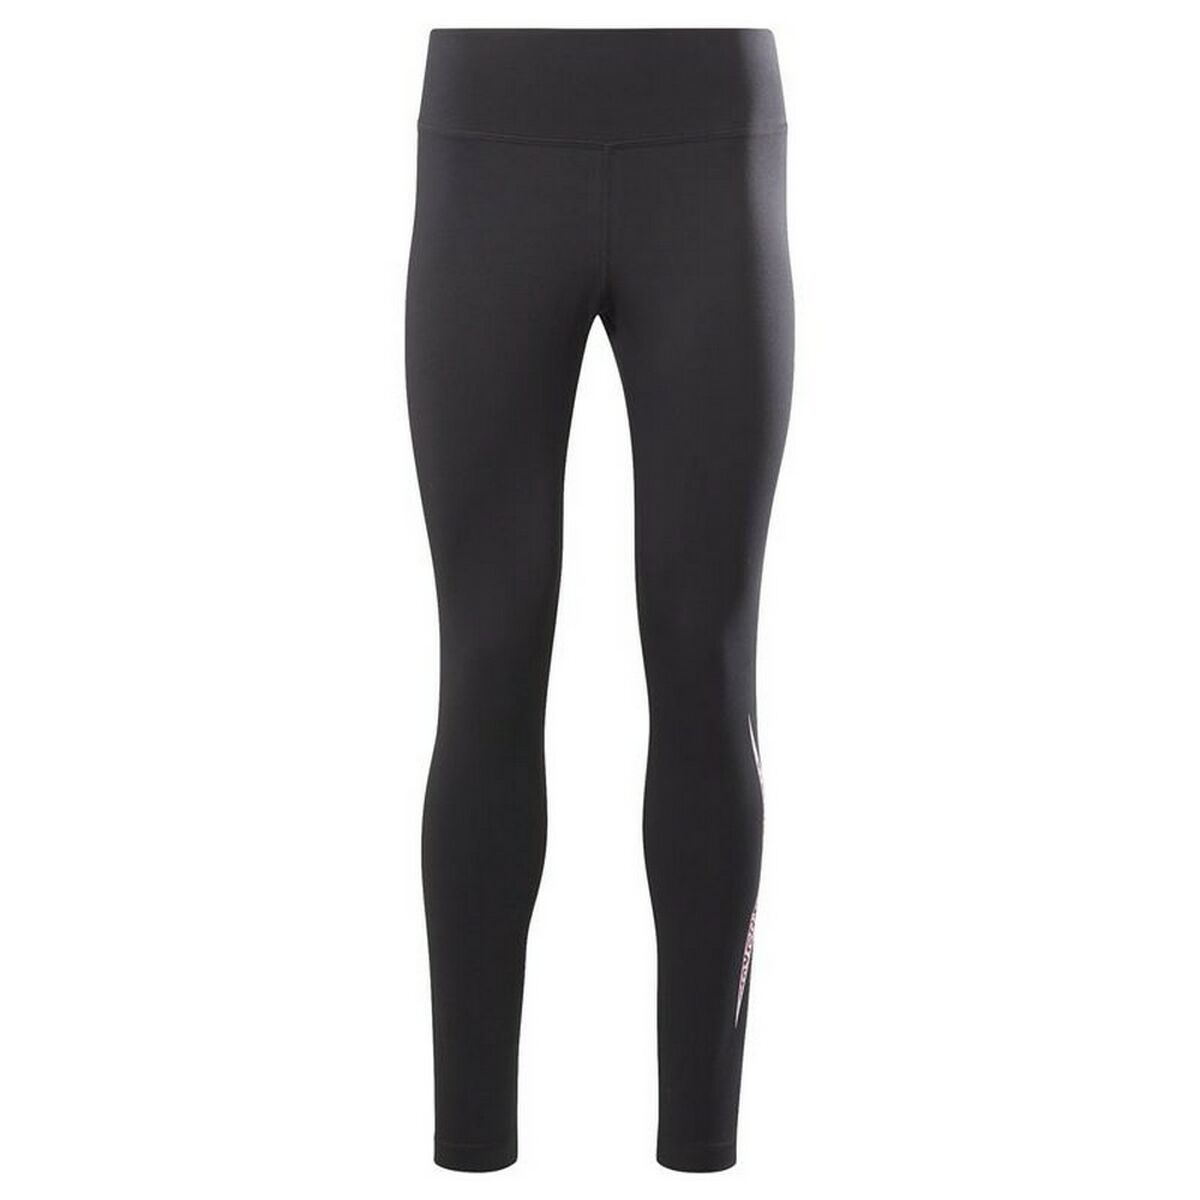 Sport leggings for Women Reebok Moder Safari Black